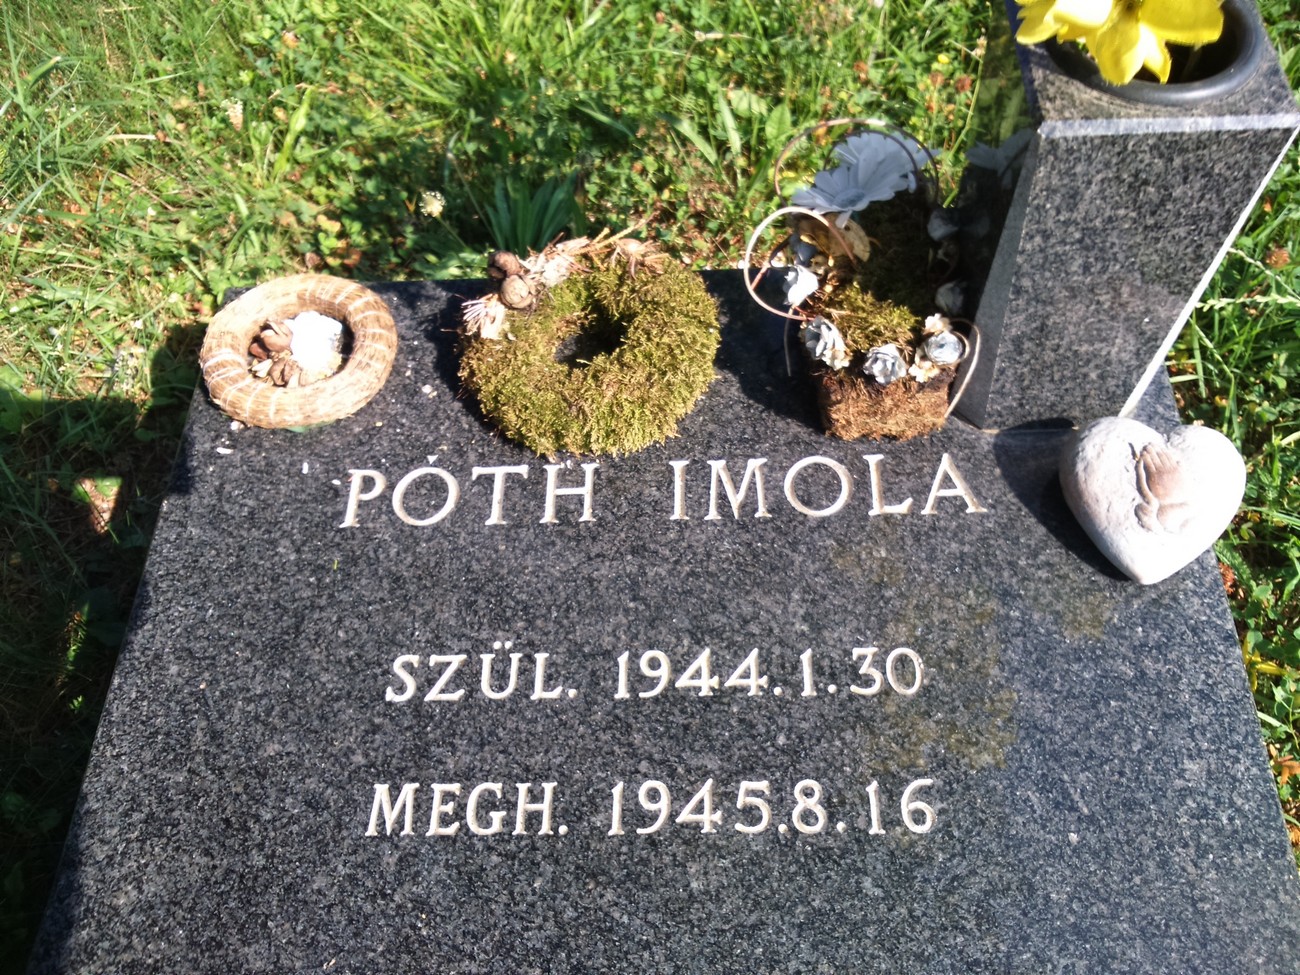 Nagrobni spomenik hčerke kalvinskega duhovnika iz Motvarjevcev, ki je umrla nekaj dni po prihodu iz taborišča v Hrastovcu. Avtor fotografije: Attila Kovács.